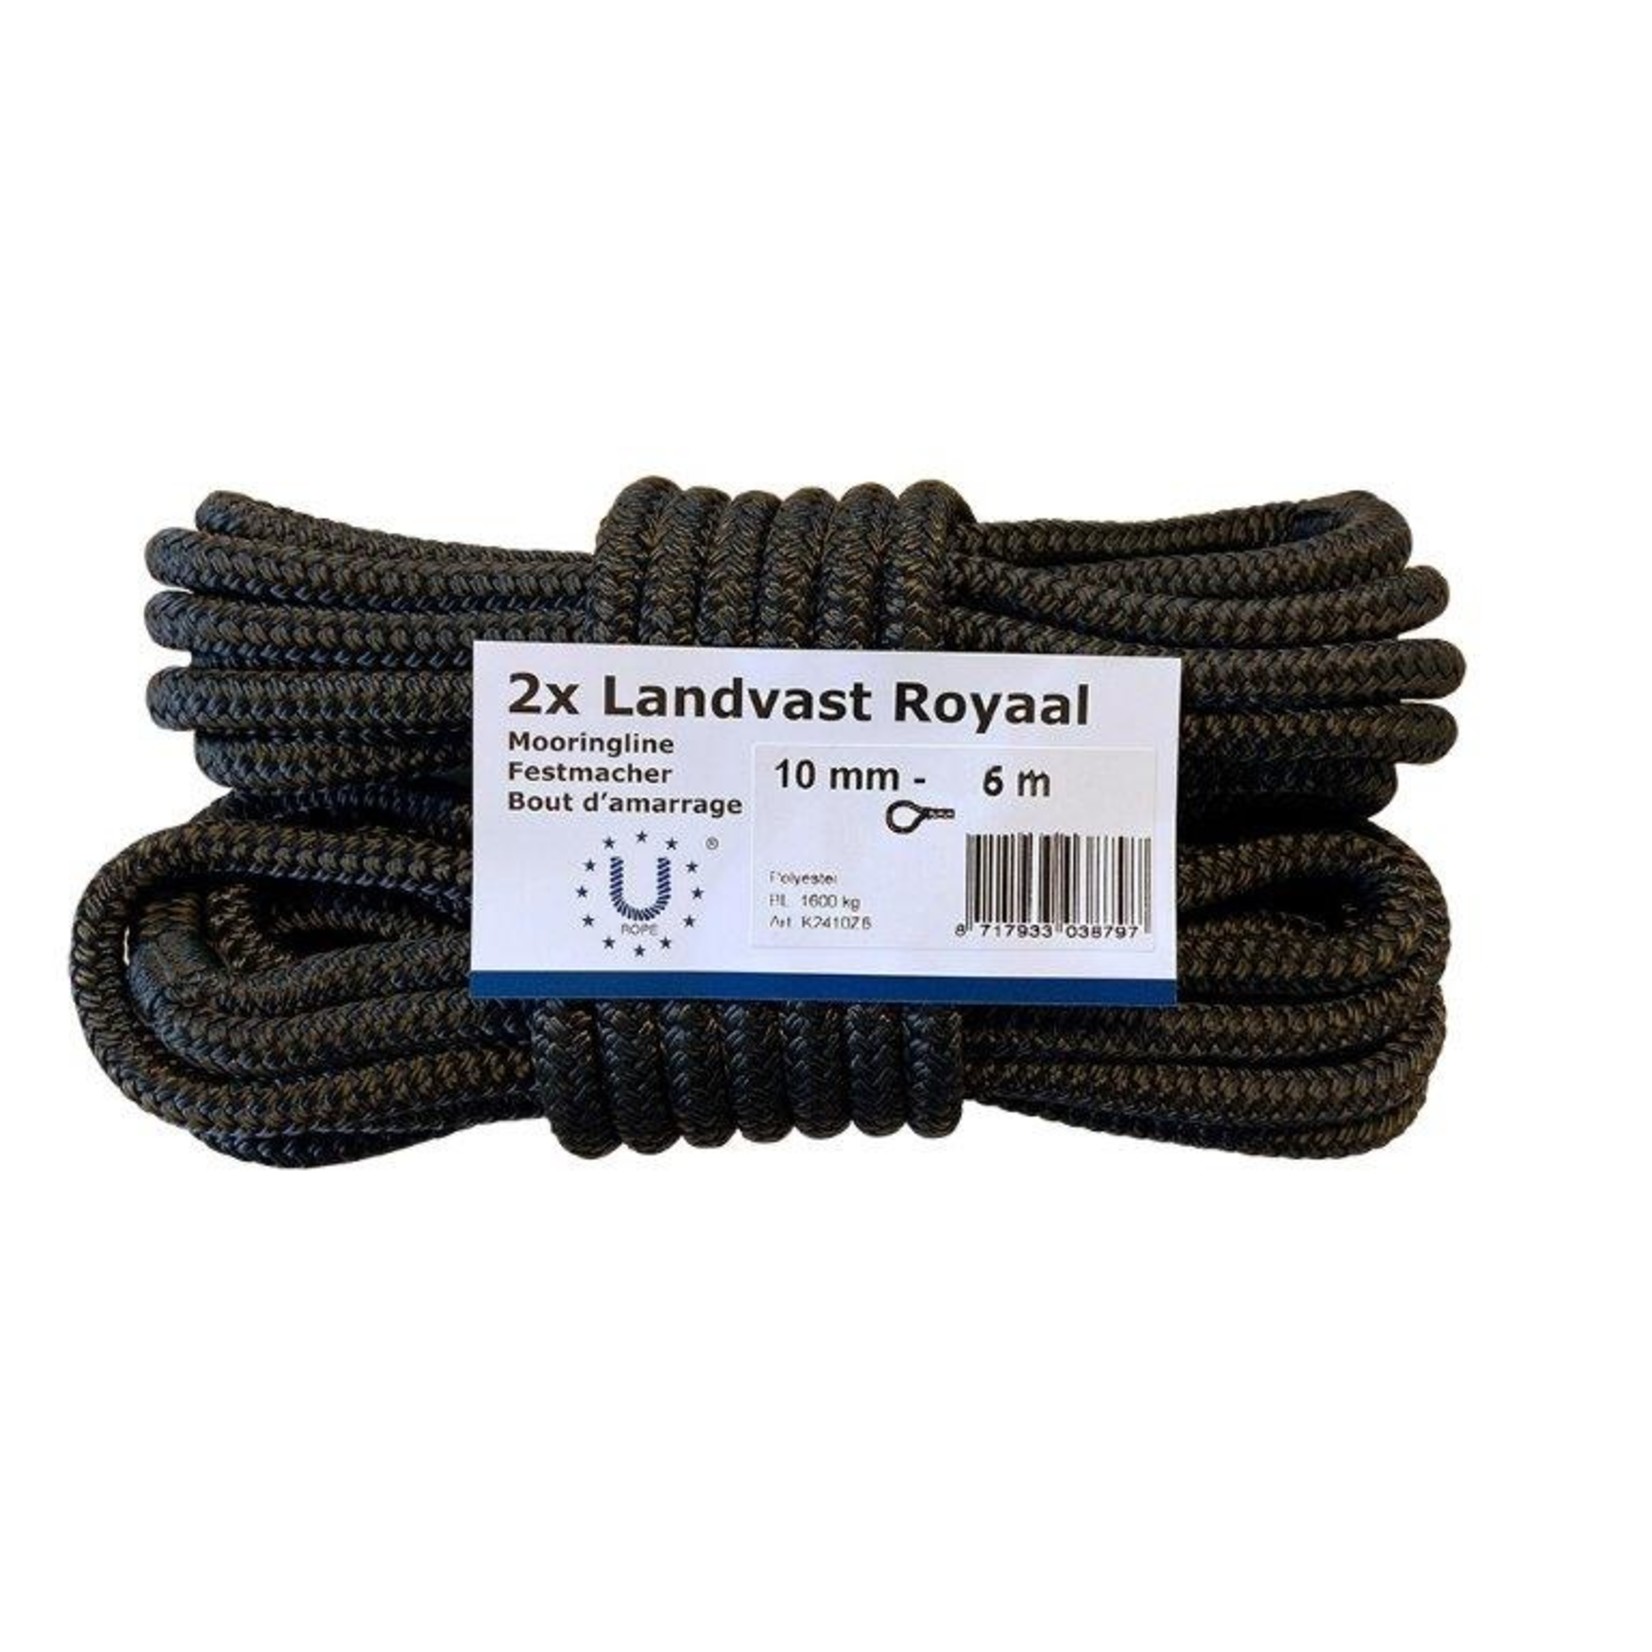 U-Rope Mooringline royaal 10mm x 6m black pair